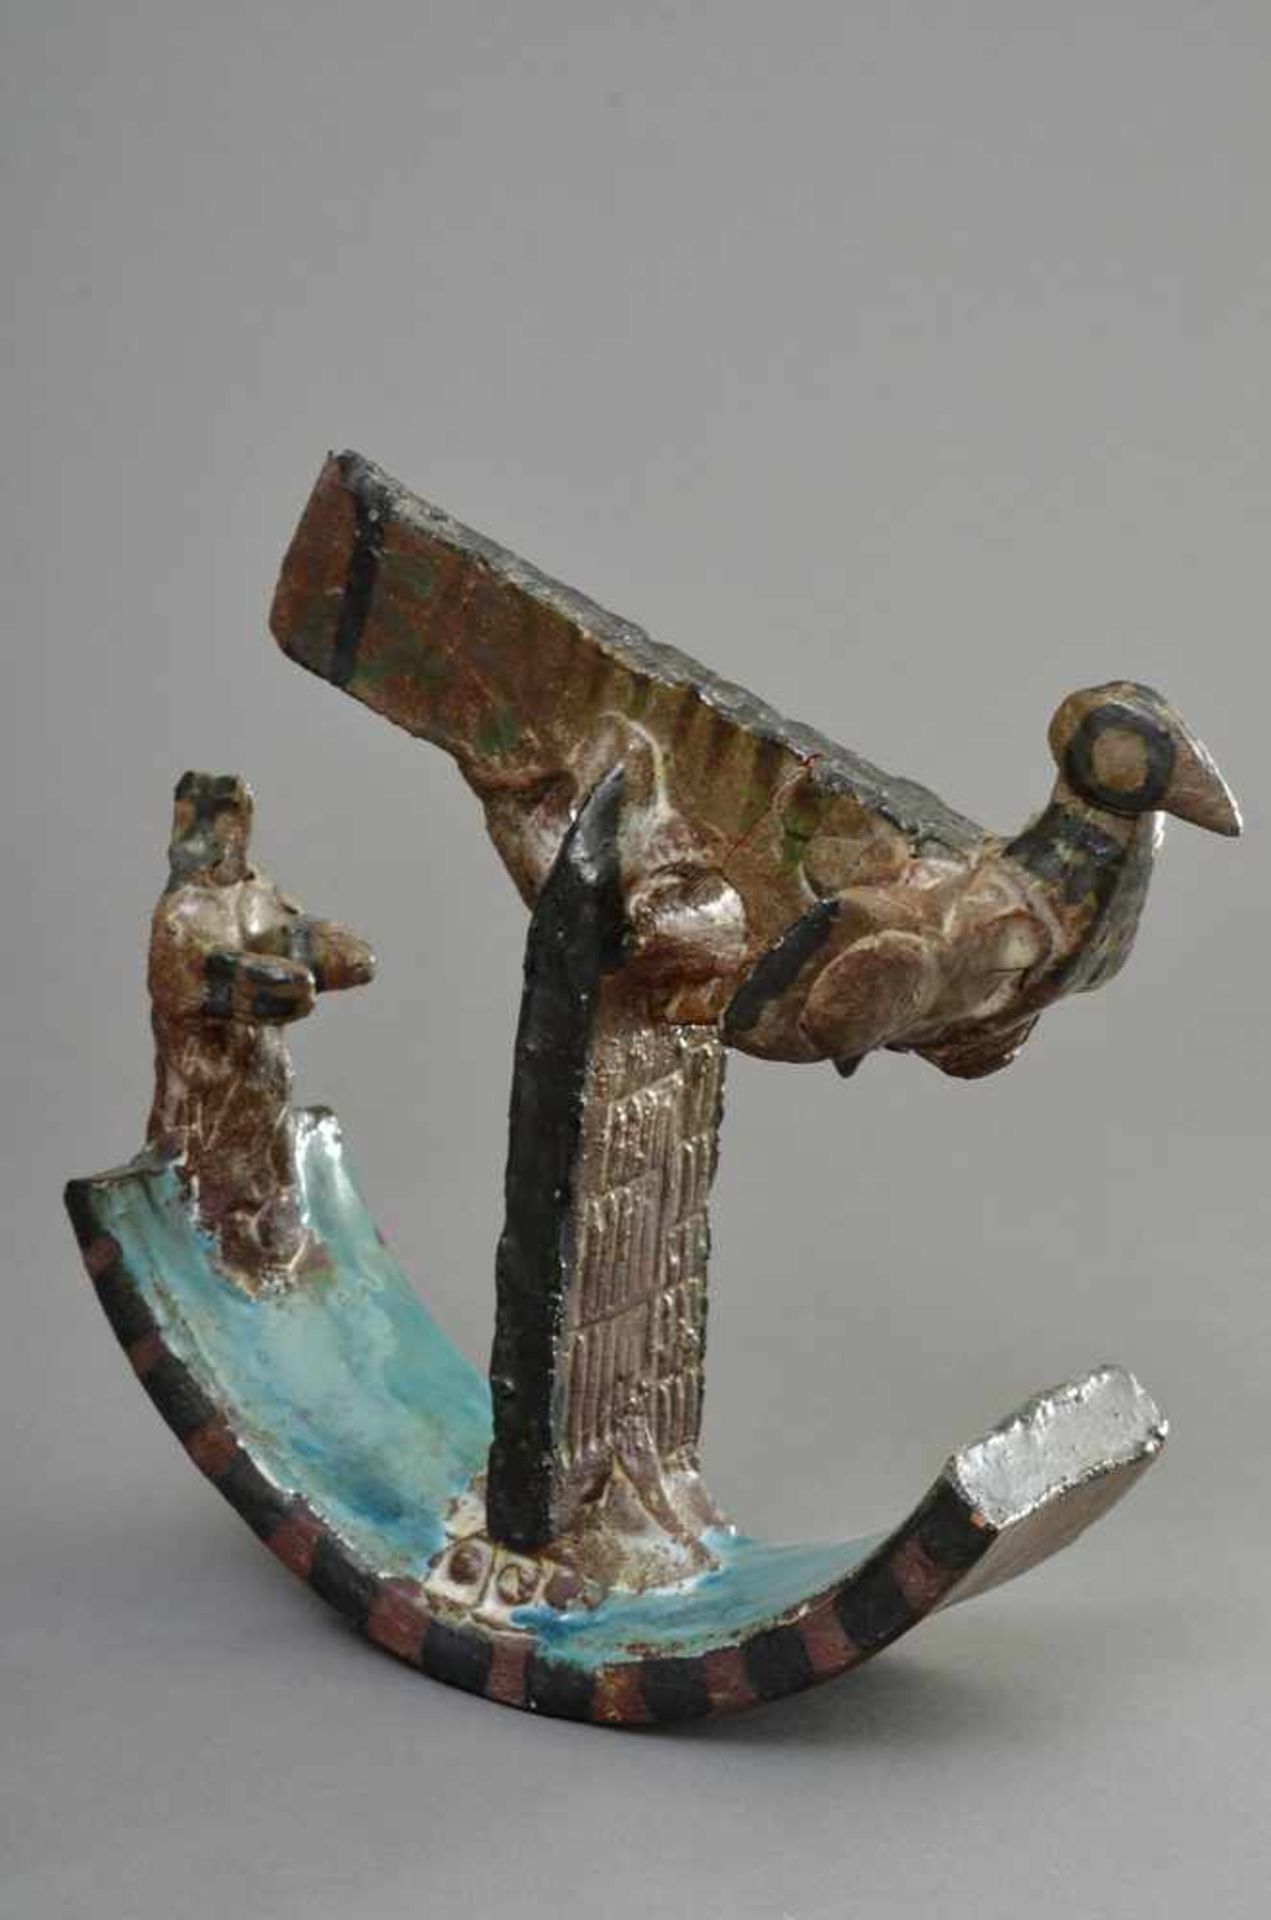 Portanier, Gilbert (*1926) "Vogel-Schiff", farbig glasierte Keramik Skulptur, H. 21cm, rest.